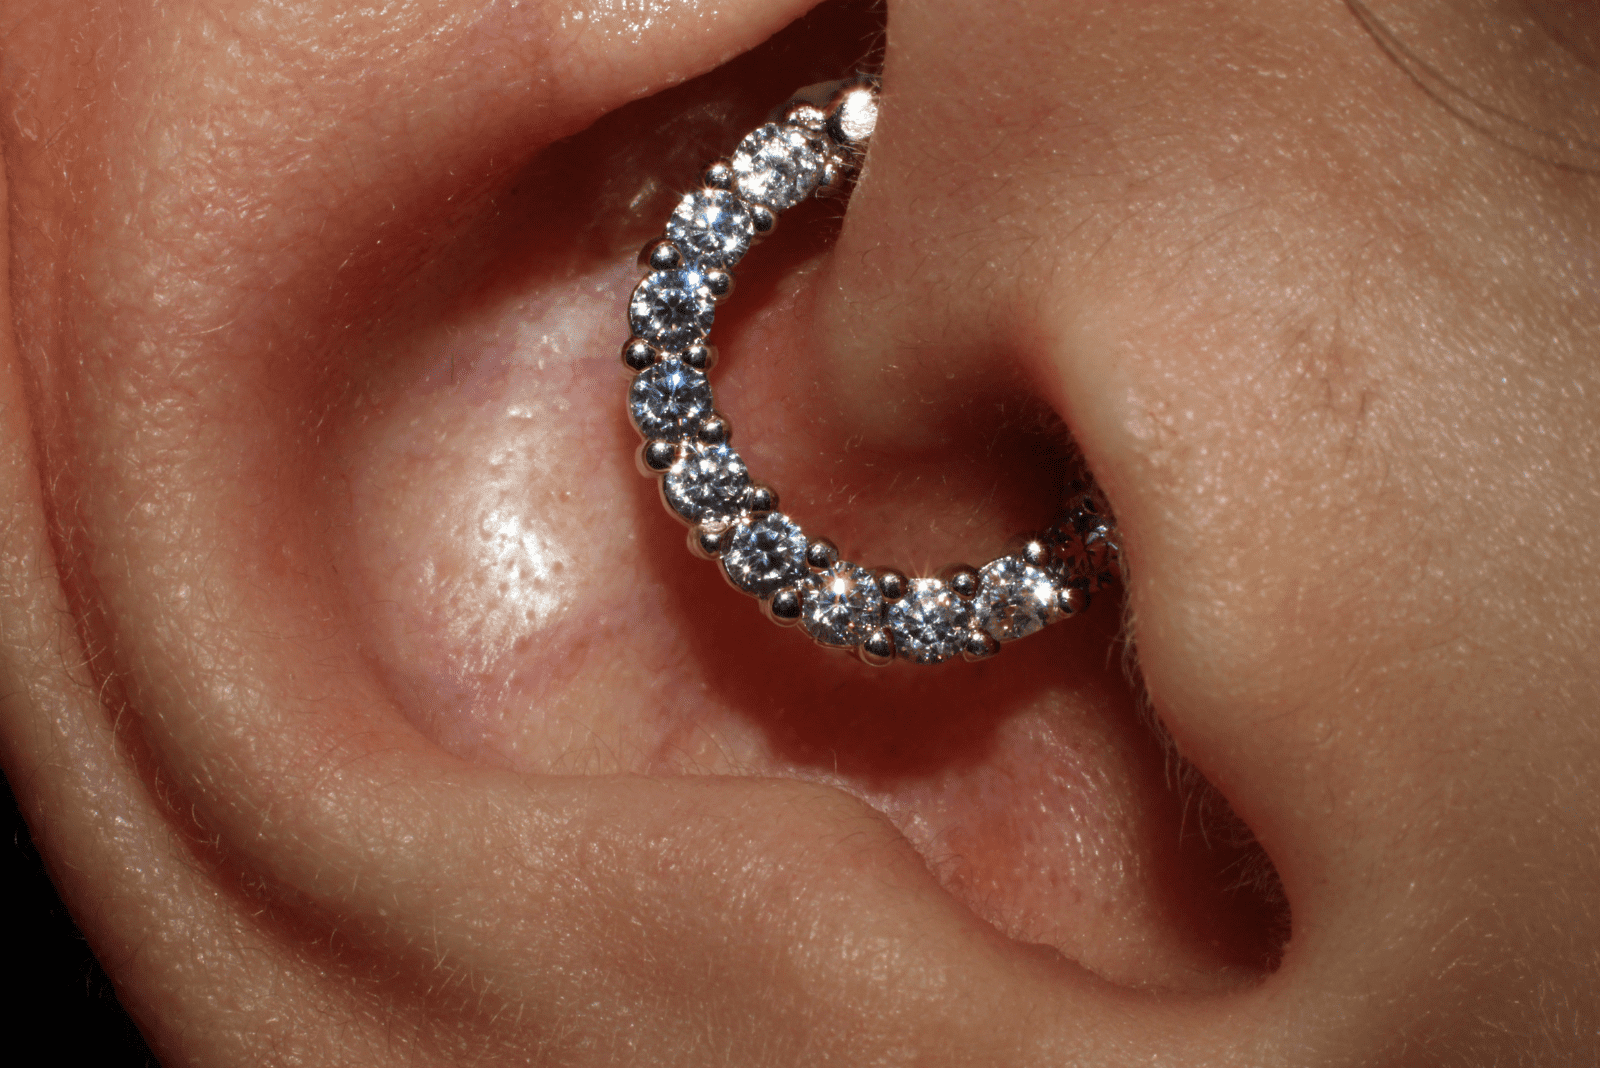 femme avec piercing au cartilage de l'oreille